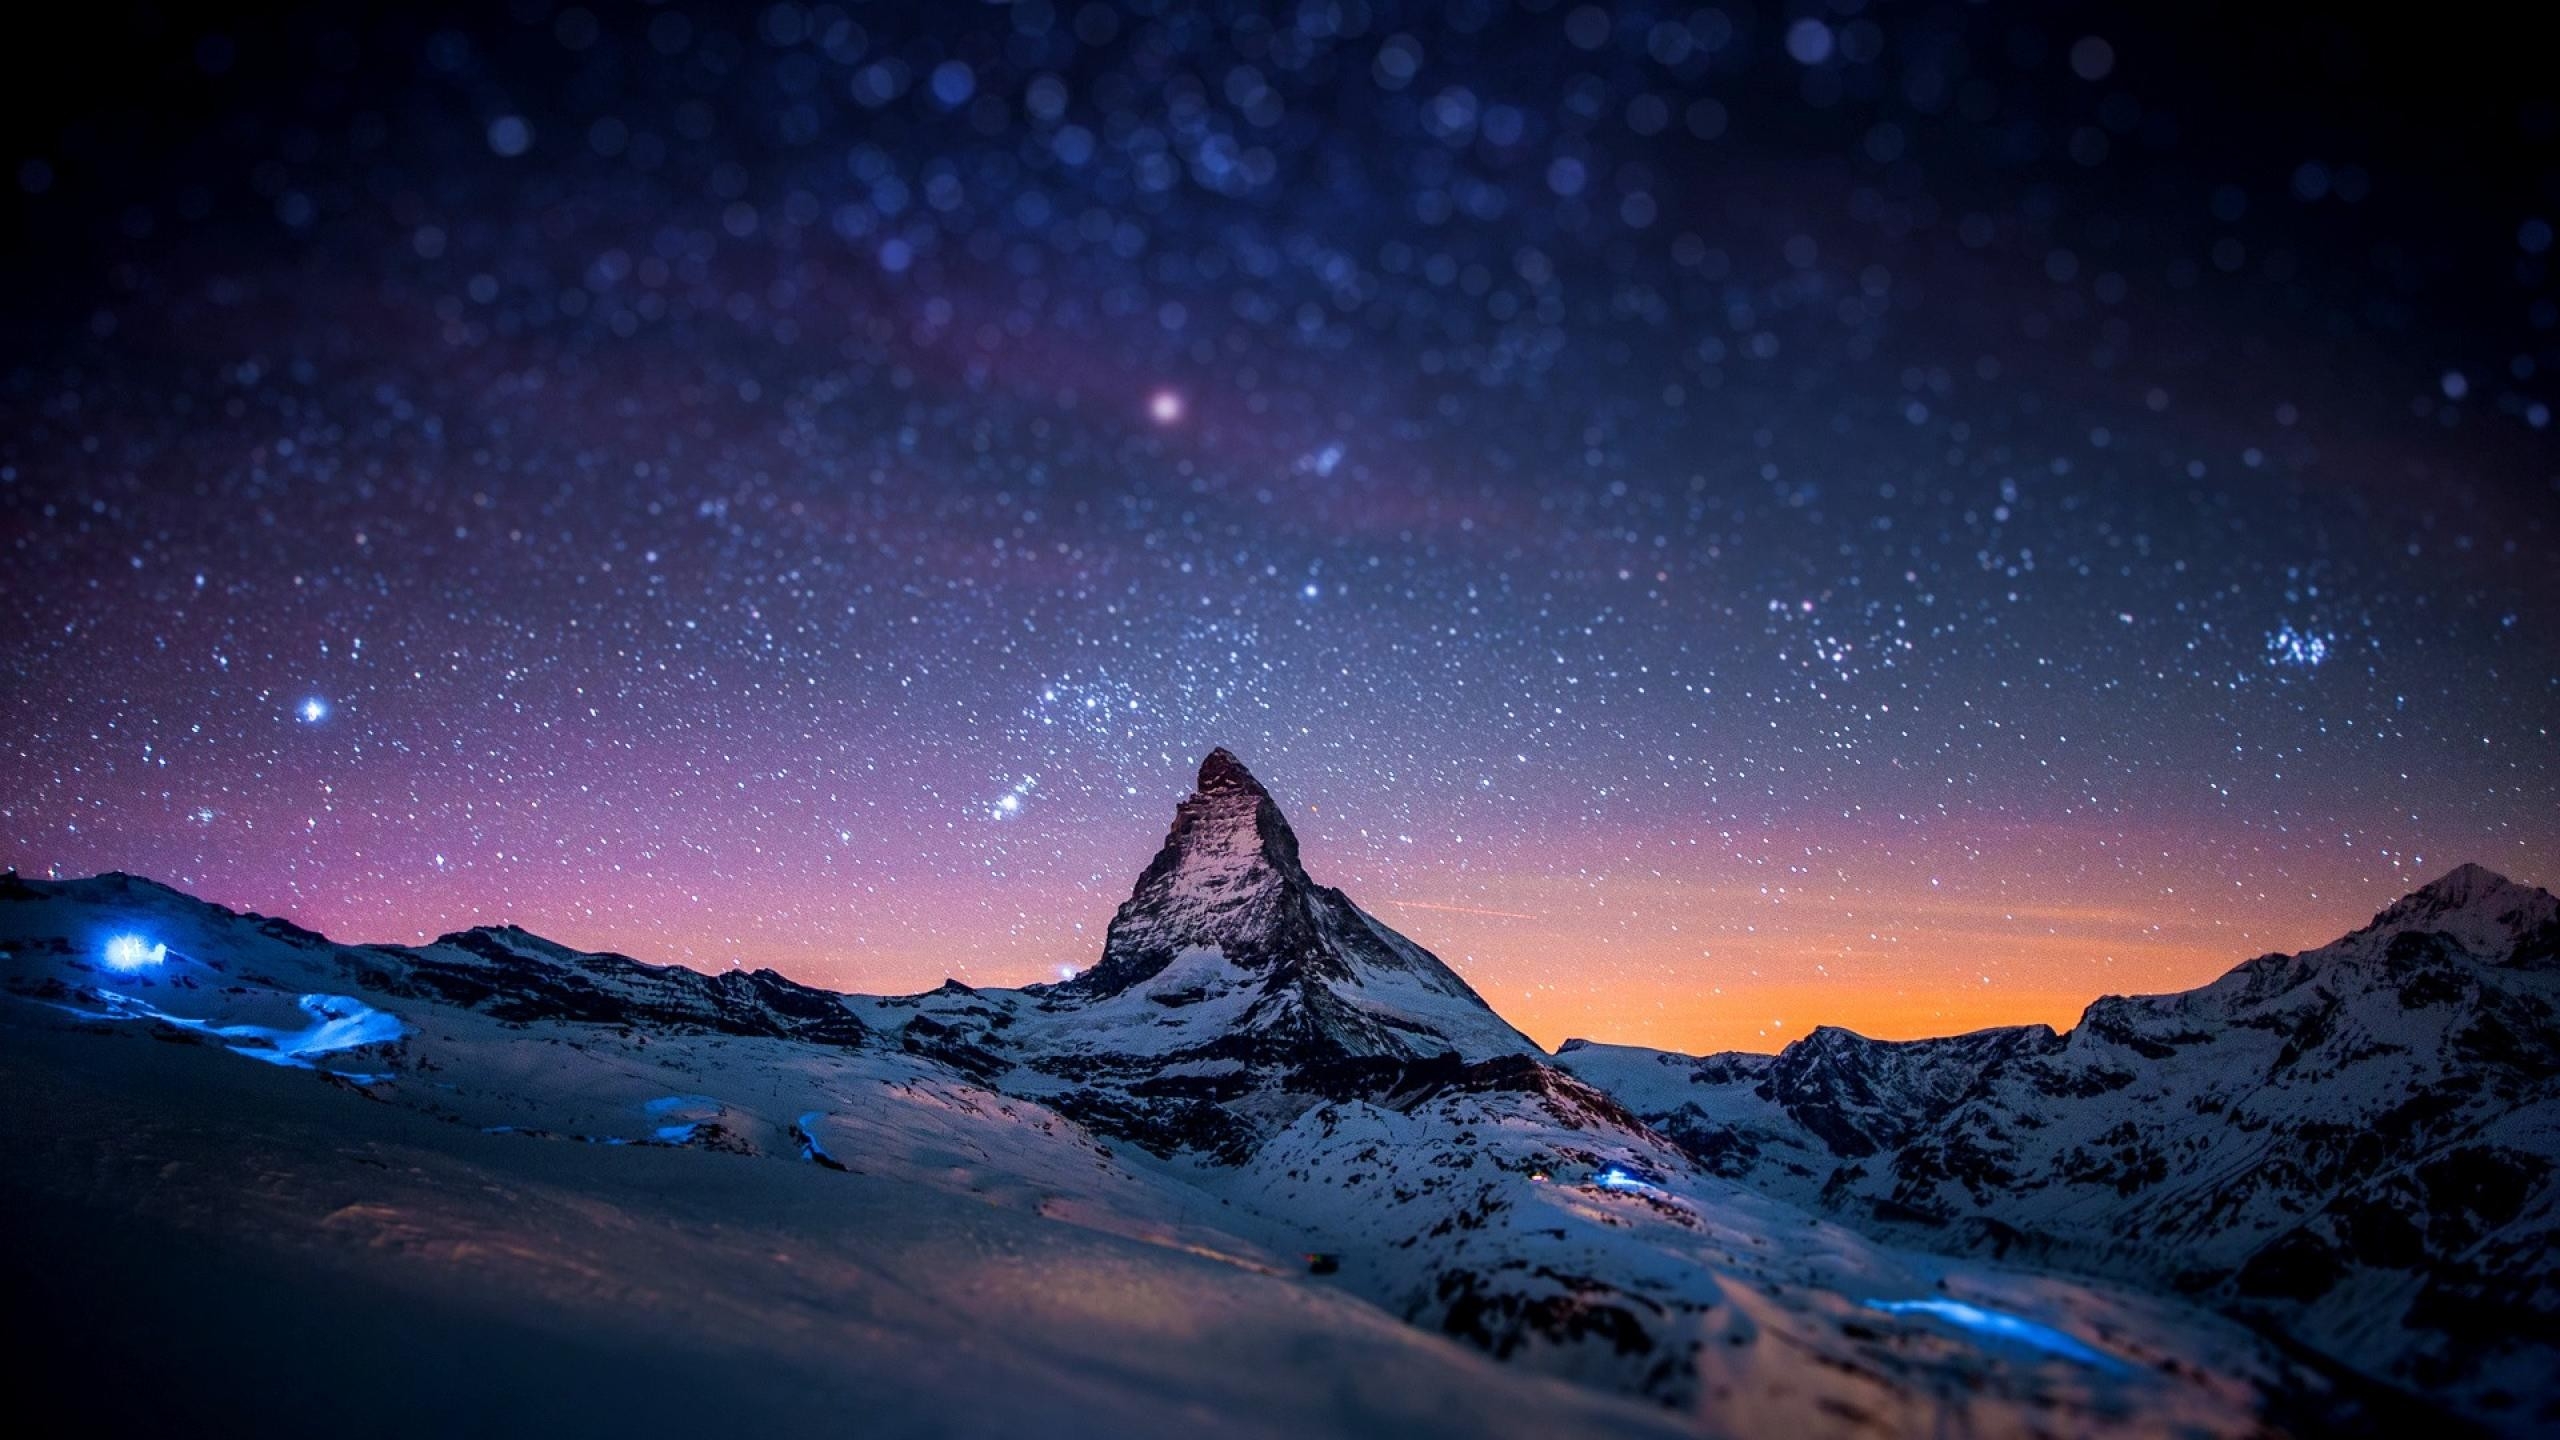 Бесплатное фото Звездное небо в горах со снежными вершинами